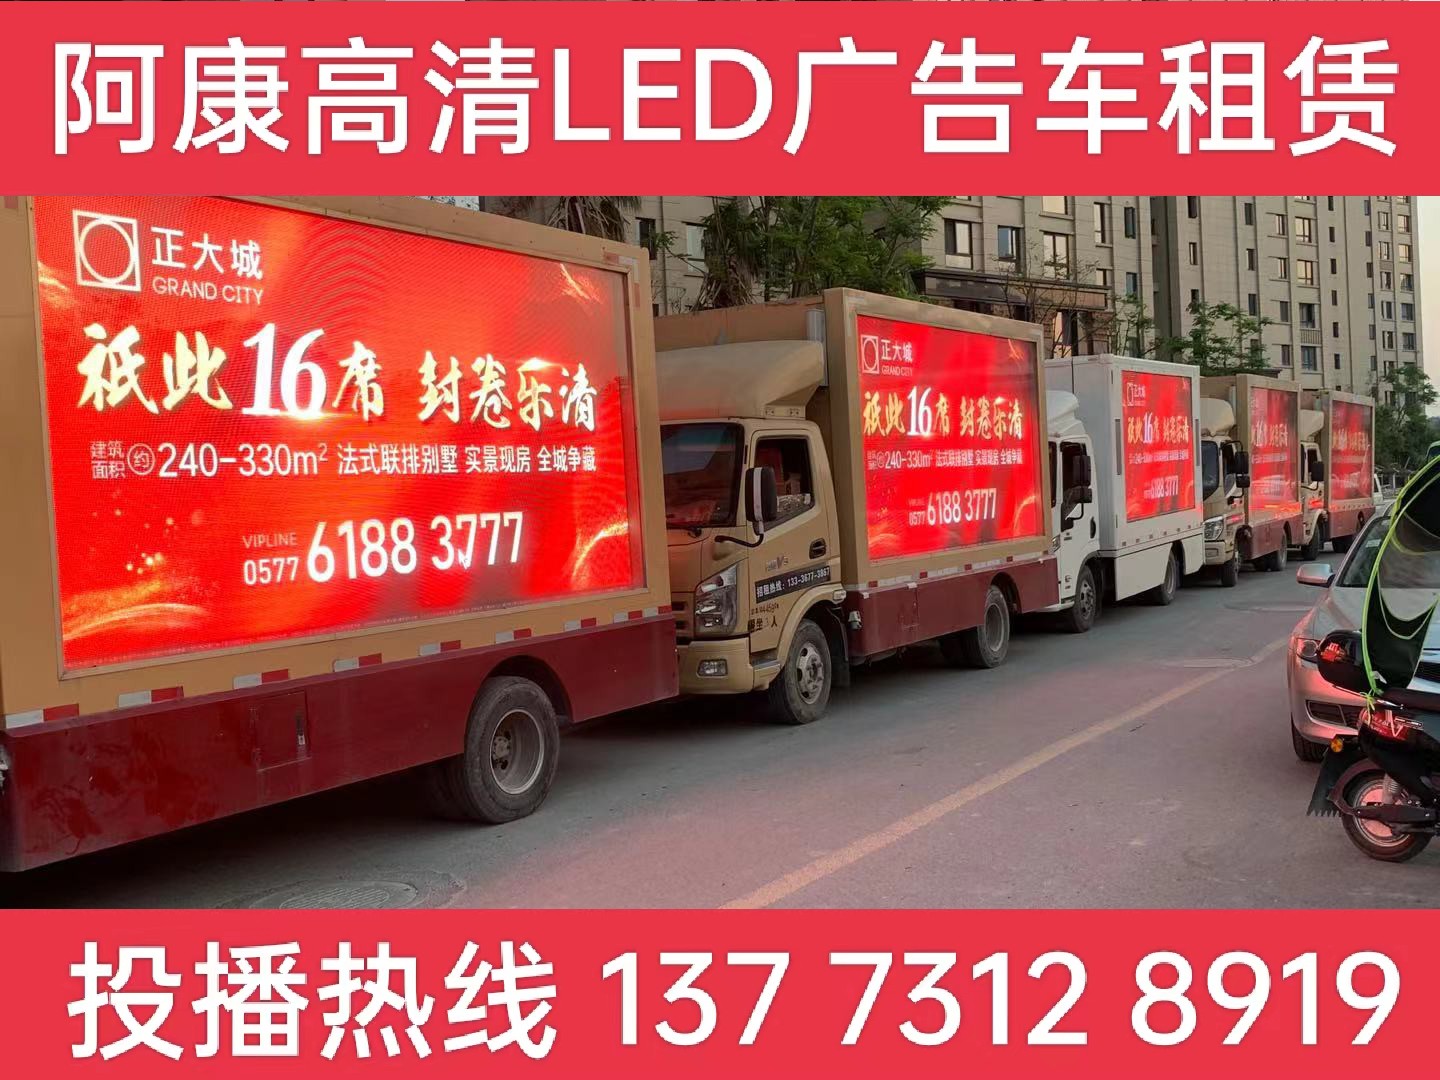 启东LED广告车出租